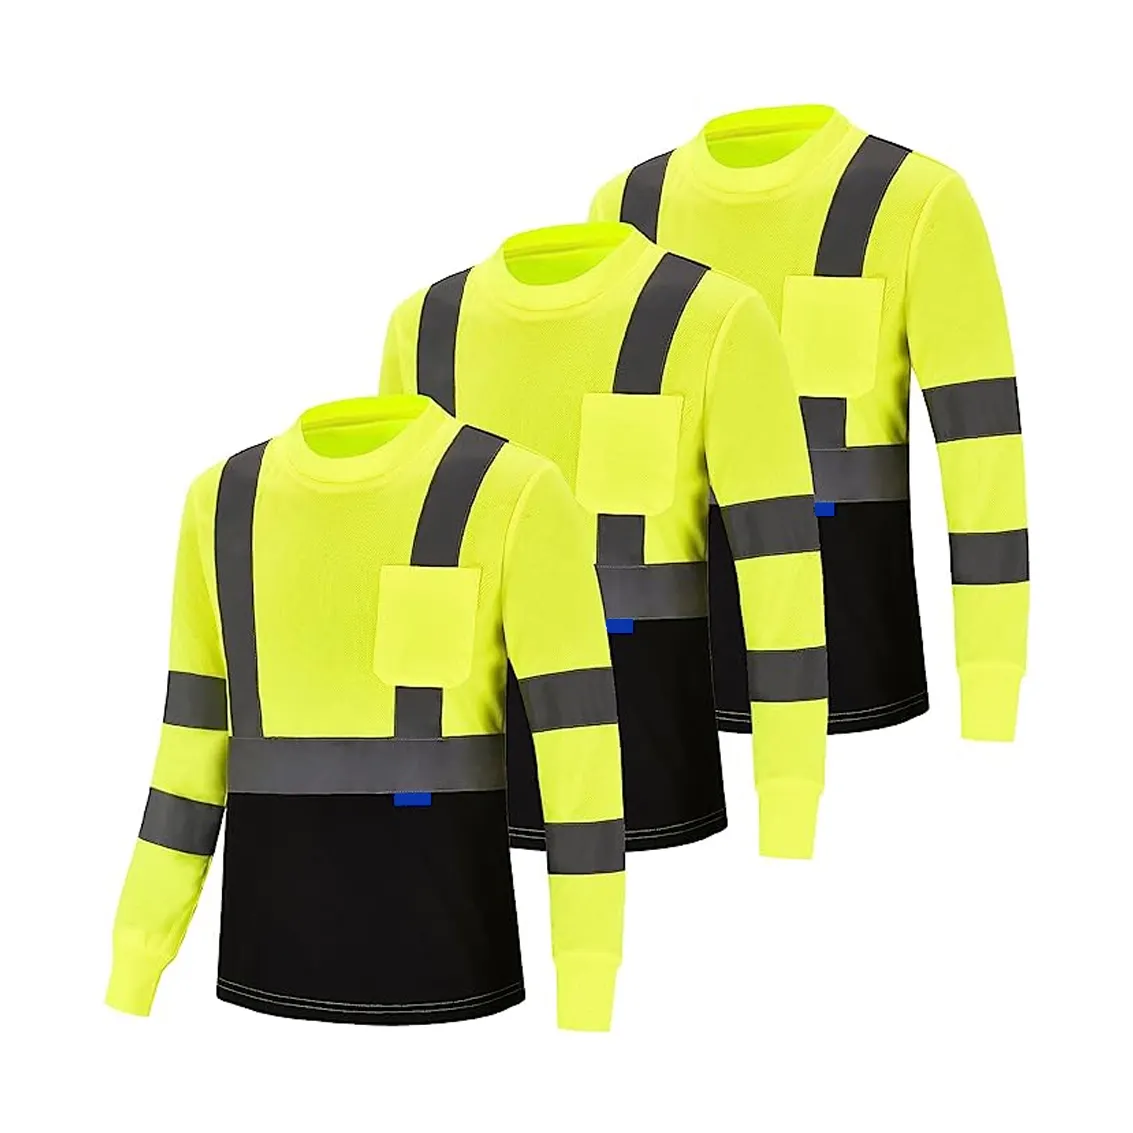 Magliette riflettenti da lavoro riflettenti a maniche lunghe ad alta visibilità camicia di sicurezza classe 2 camicia riflettente ad alta visibilità di sicurezza